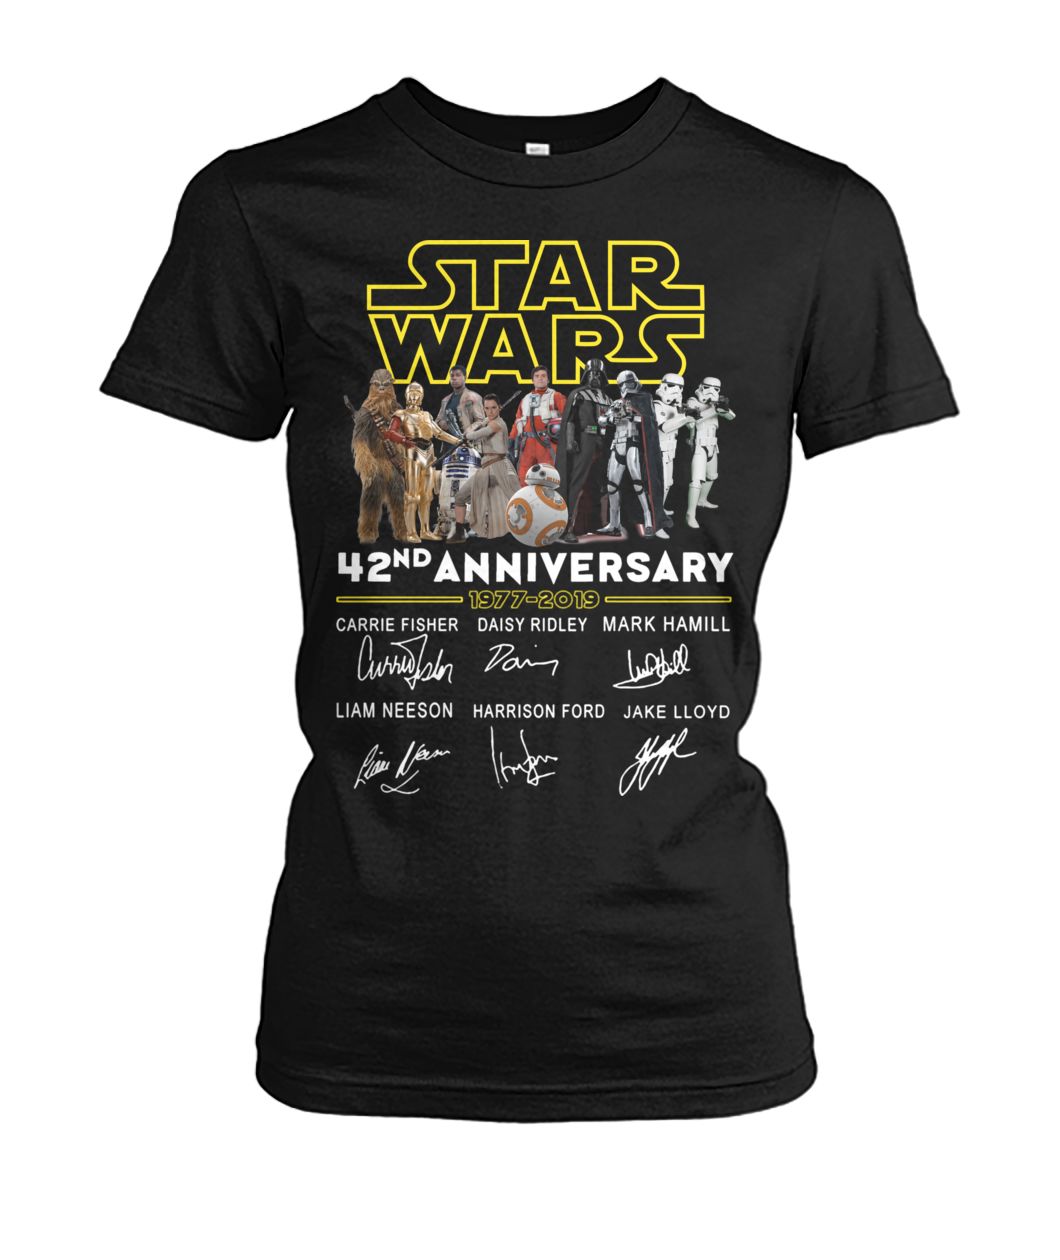 Star wars 42nd anniversary 1977-2019 signatures women's crew tee